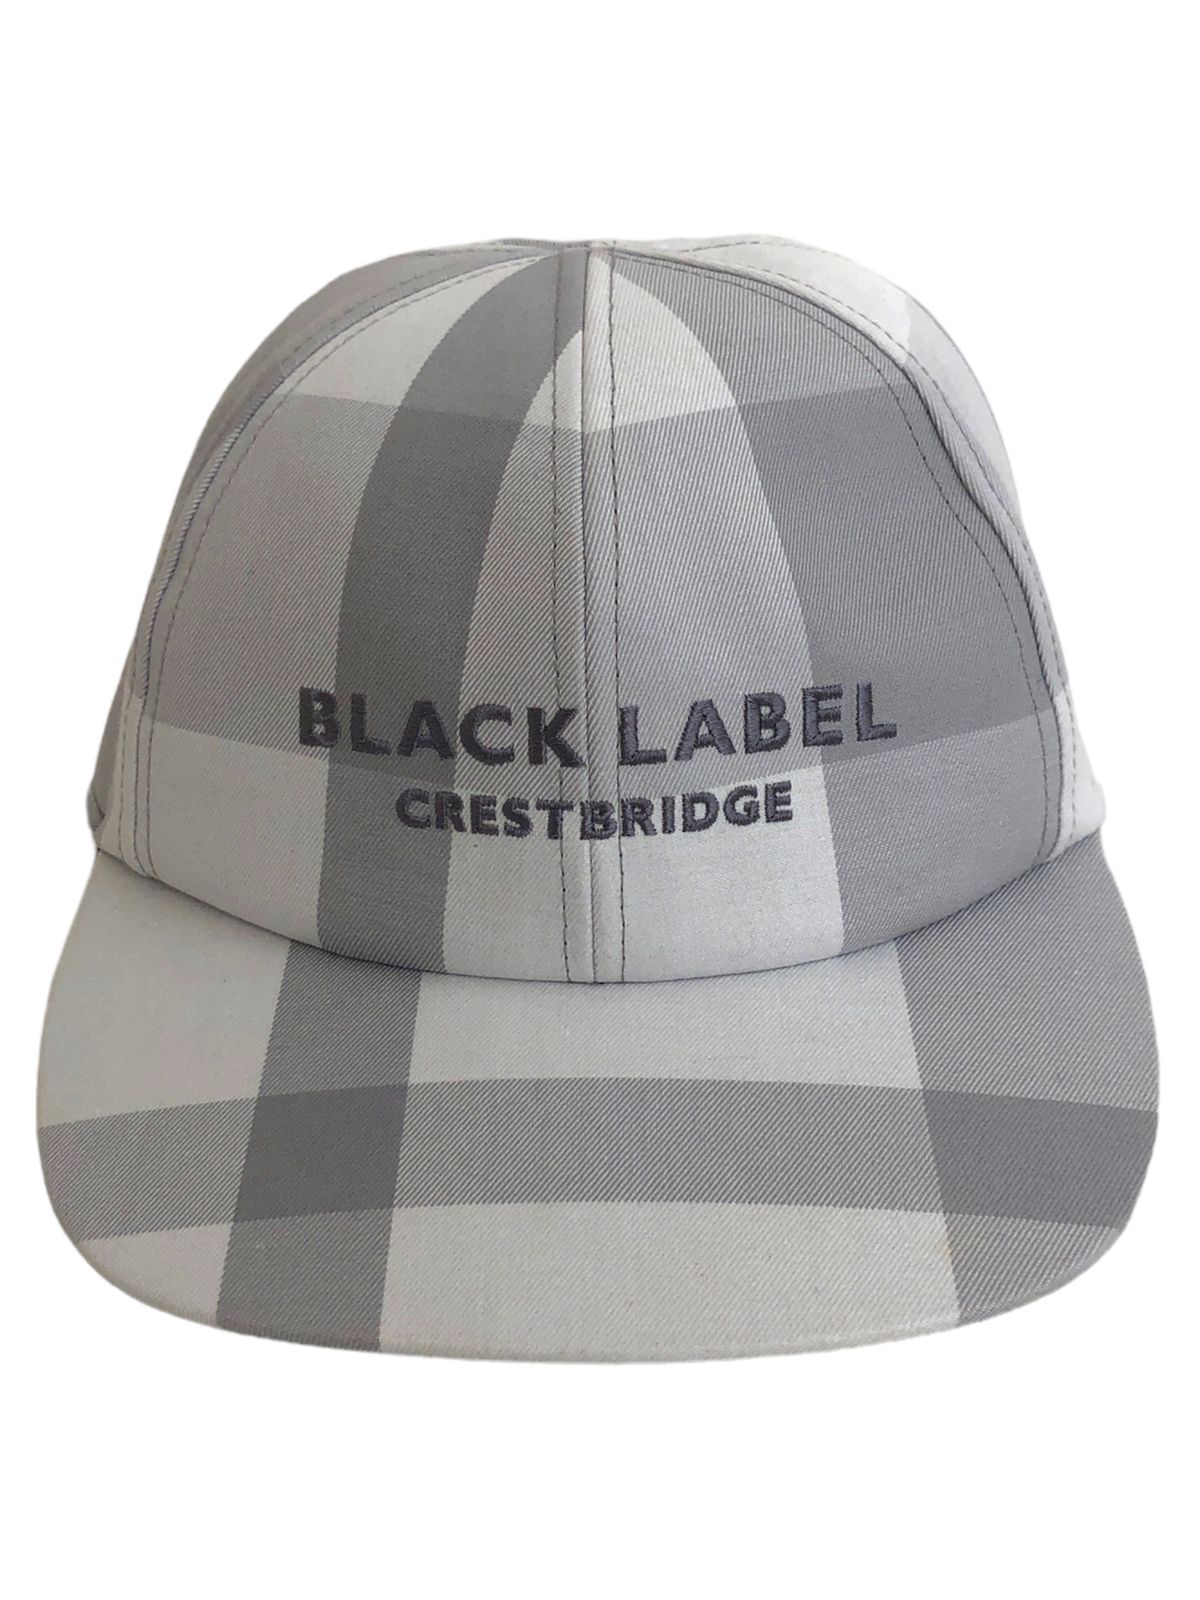 BLACK LABEL CRESTBRIDGE (ブラックレーベルクレストブリッジ) キャップ ロゴ チェック 51515-550-02  グレー×ホワイト 頭周り58㎝ メンズ/004